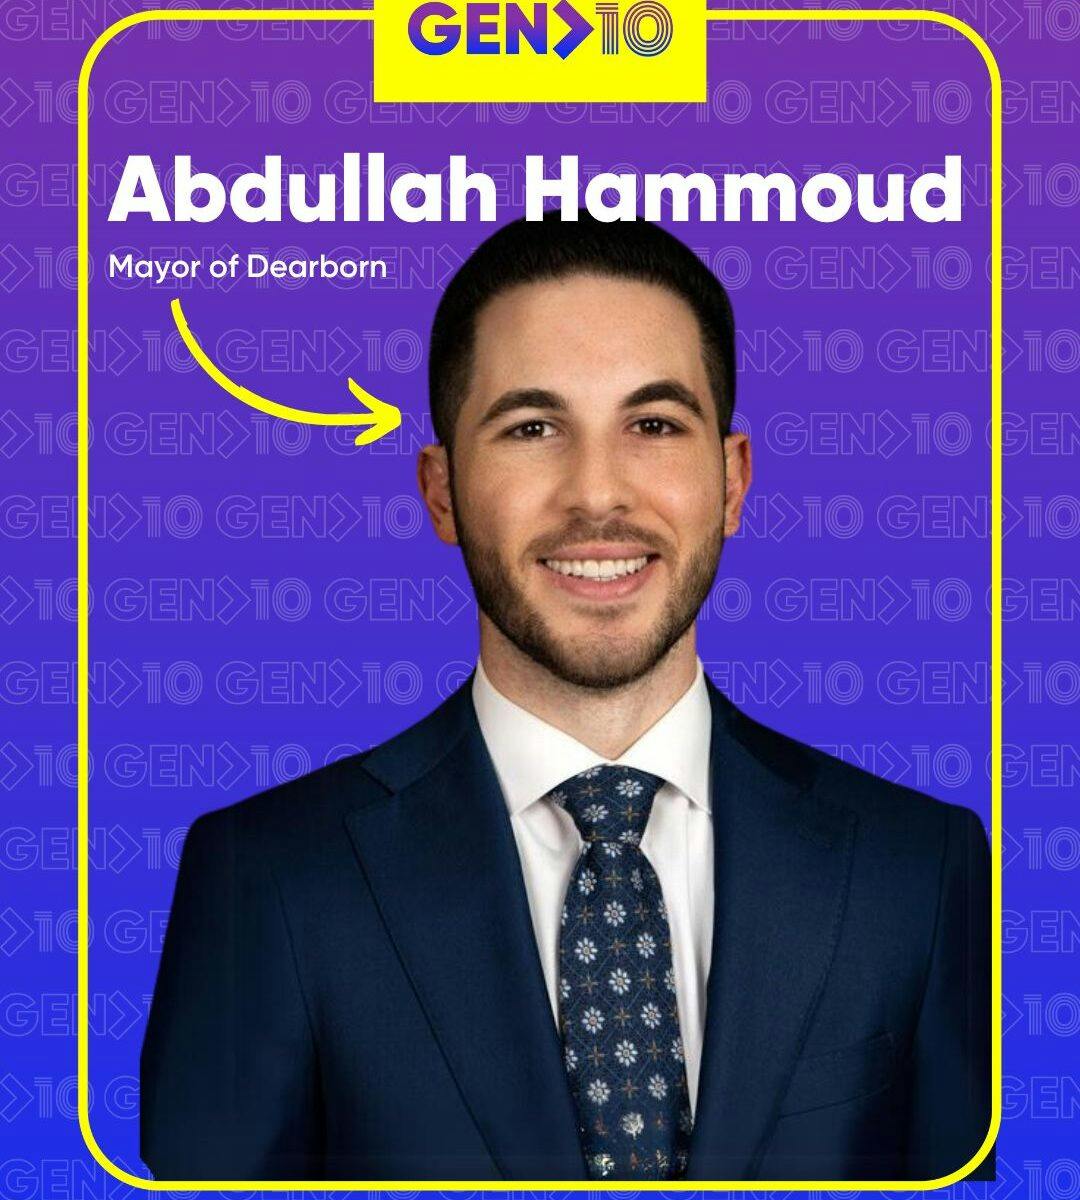 Abdullah Hammoud